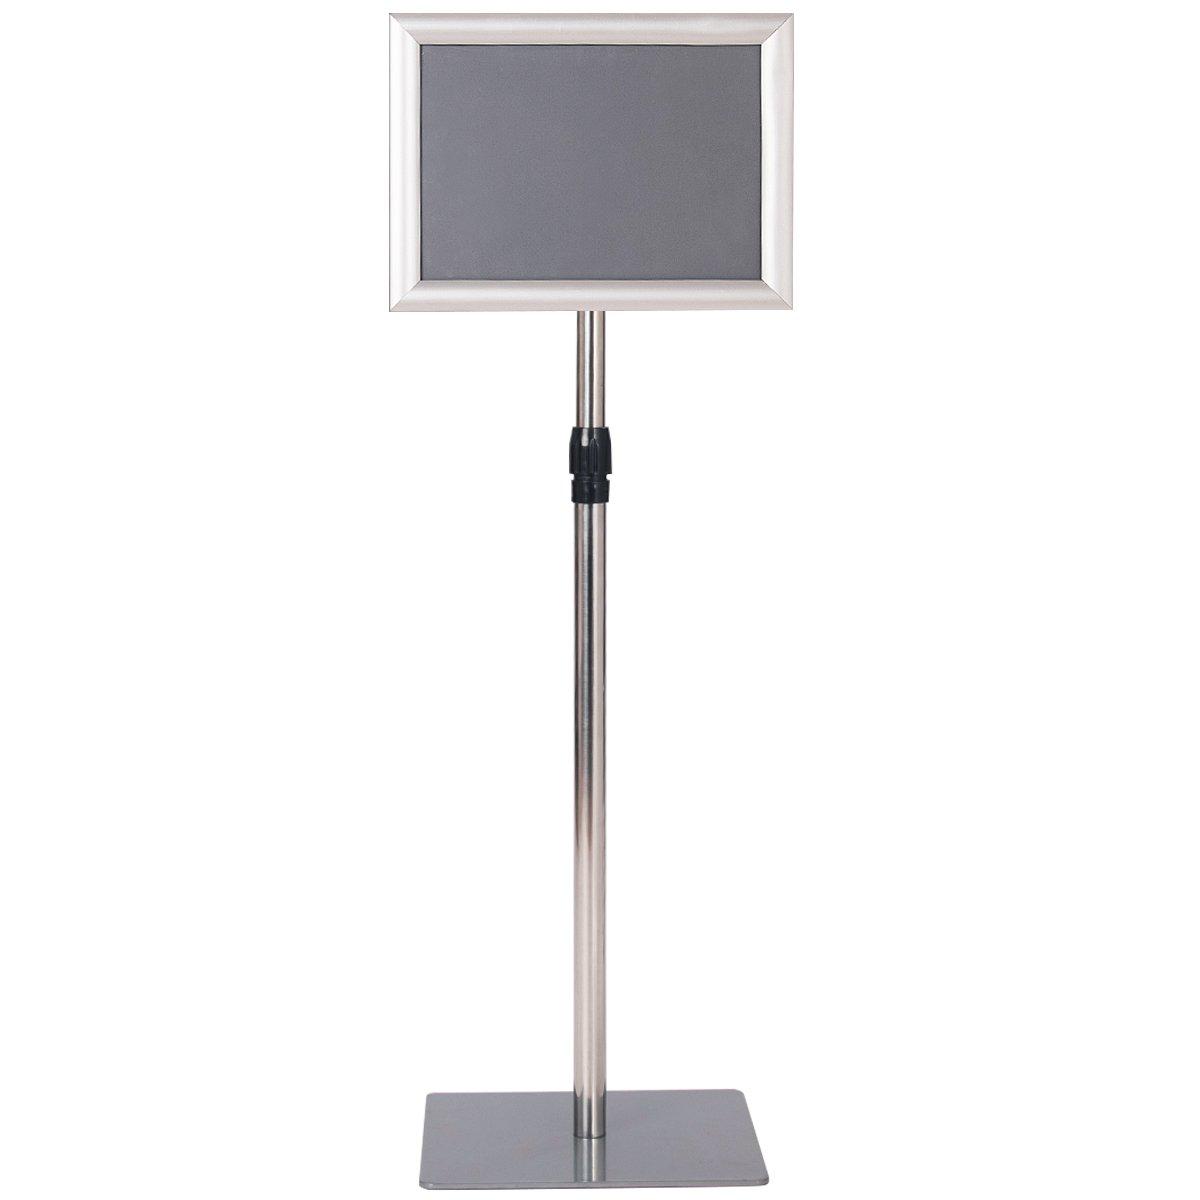 Adjustable A4 Pedestal Poster Stand Shop Sign Display Holder Advertisement Board